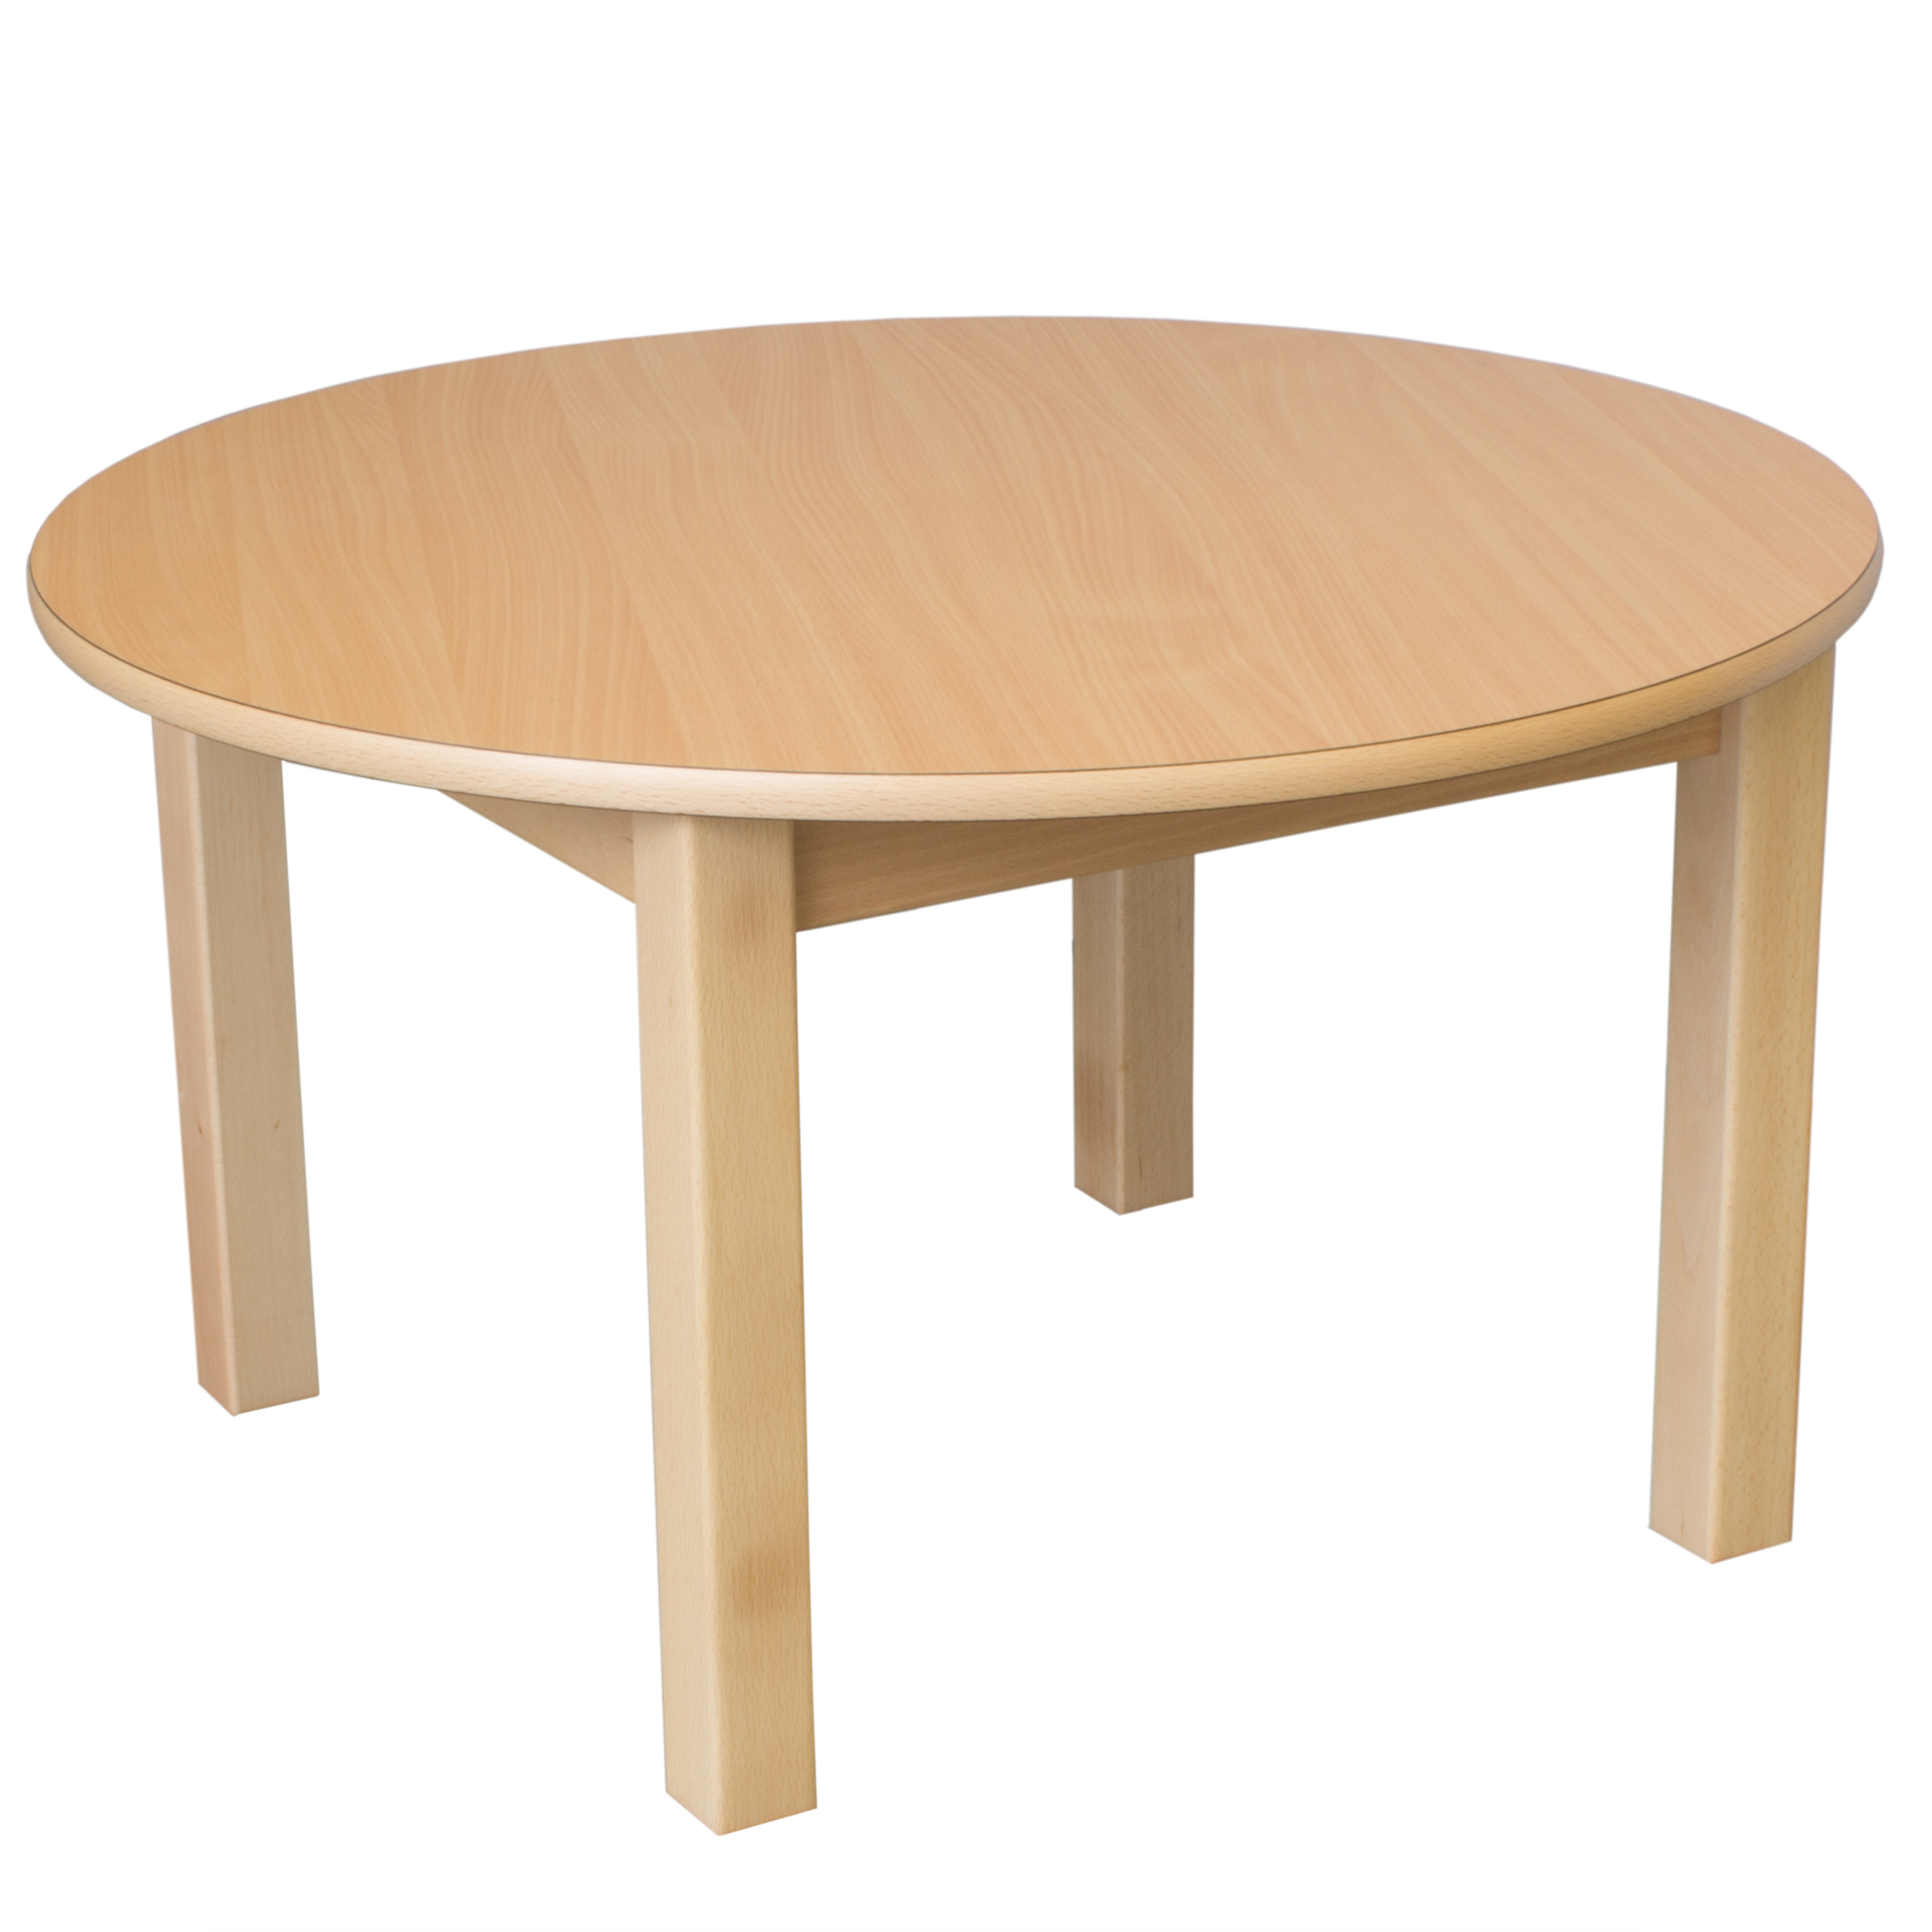 Runder Tisch, Durchmesser 60 cm, Tischhöhe 40 cm